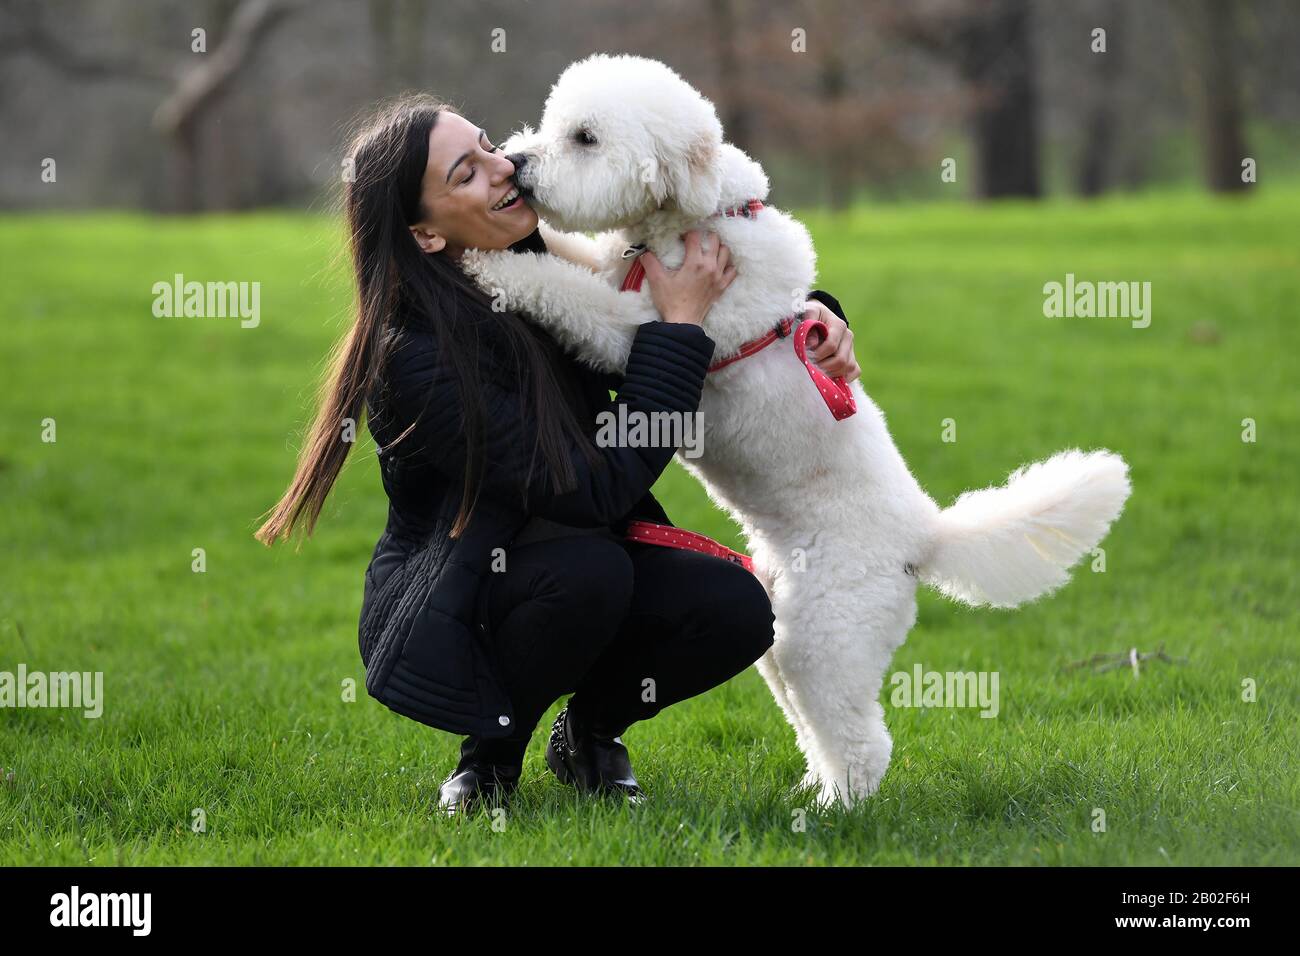 Hayley Byrne-Se Une con su perro Ellie, uno de los finalistas de Amigos por la vida 2020, en un evento de lanzamiento para los Crufts y Amigos por la vida de este año en Green Park, Londres. Foto de stock